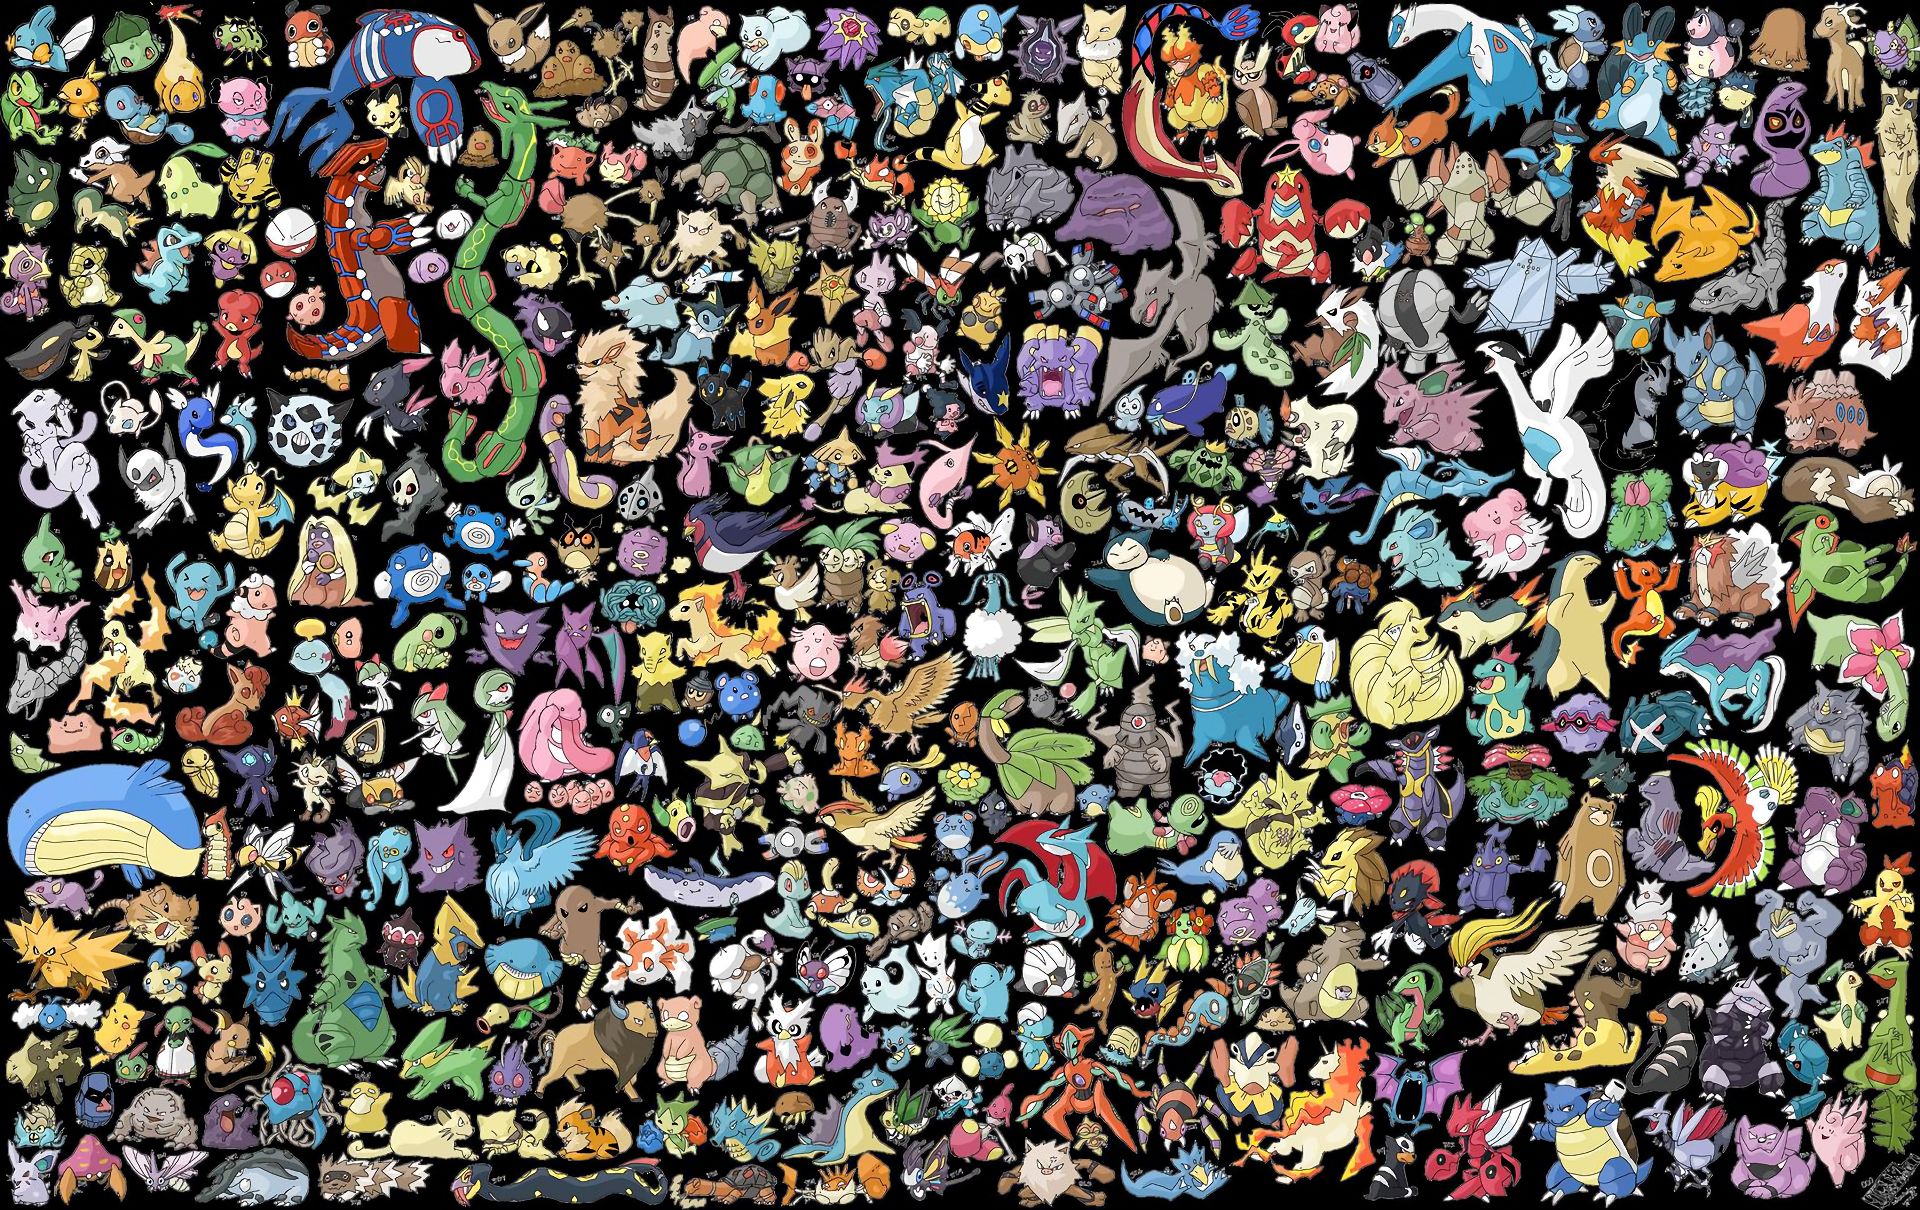 272044 Hintergrundbild herunterladen pokémon, animes, abra (pokémon), aerodaktylus (pokémon), alakazam (pokémon), arbok (pokémon), arkani (pokémon), articuno (pokémon), beedrill (pokémon), rosenkohl (pokémon), blastoise (pokémon), bisasam (pokémon), butterfrei (pokémon), raupe (pokémon), chansey (pokémon), glurak (pokémon), glumanda (pokémon), charmeleon (pokémon), clefable (pokémon), clefairy (pokémon), cloyster (pokémon), kubon (pokémon), taugong (pokémon), diglett (pokémon), dito (pokémon), dodrio (pokémon), doduo (pokémon), drachenluft (pokémon), dragonit (pokémon), dratini (pokémon), drowzee (pokémon), dugtrio (pokémon), evoli (pokémon), ekans (pokémon), electabuzz (pokémon), elektrode (pokémon), exeggcute (pokémon), exeggutor (pokémon), farfetch´d (pokémon), furcht (pokémon), leuchtfeuer (pokémon), gastly (pokémon), gengar (pokémon), geodude (pokémon), düsternis (pokémon), golbat (pokémon), golden (pokémon), goldgans (pokémon), golem (pokémon), steinmetz (pokémon), grimmer (pokémon), growlith (pokémon), garados (pokémon), jäger (pokémon), hitmonchan (pokémon), hitmonlee (pokémon), horsea (pokémon), hypno (pokémon), efeusaurier (pokémon), pummeluff (pokémon), jolteon (pokémon), jynx (pokémon), kabuto (pokémon), kabutops (pokémon), kadabra (pokémon), kakuna (pokémon), kangaskhan (pokémon), kingler (pokémon), köffing (pokémon), krabben (pokémon), lapras (pokémon), leckitung (pokémon), machamp (pokémon), machoke (pokémon), machop (pokémon), magikarp (pokémon), magmar (pokémon), magnemit (pokémon), magneton (pokémon), mankey (pokémon), marowak (pokémon), meowth (pokémon), metapod (pokémon), mew (pokémon), mewtu (pokémon), moltres (pokémon), herr mime (pokémon), muk (pokémon), nidoking (pokémon), nidoqueen (pokémon), nidoran (pokémon), nidorina (pokémon), nidorino (pokémon), ninetales (pokémon), seltsam (pokémon), omanyte (pokémon), omastar (pokémon), onix (pokémon), paras (pokémon), parasekt (pokémon), persisch (pokémon), pidgeot (pokémon), pidgeotto (pokémon), pidgey (pokémon), pikachu, pinsir (pokémon), polwag (pokémon), poliwirbel (pokémon), polyzorn (pokémon), ponita (pokémon), porygon (pokémon), primeape (pokémon), psyduck (pokémon), raichu (pokémon), rapidash (pokémon), rattikarl (pokémon), ratta (pokémon), rydon (pokémon), rihorn (pokémon), sandan (pokémon), sandhieb (pokémon), scyther (pokémon), seadra (pokémon), seeking (pokémon), seele (pokémon), sheller (pokémon), slowbro (pokémon), slowpoke (pokémon), relaxo (pokémon), speer (pokémon), schiggy (pokémon), starmie (pokémon), starju (pokémon), tangela (pokémon), stier (pokémon), tentacool (pokémon), tentacruel (pokémon), vaporeon (pokémon), giftmotte (pokémon), venonat (pokémon), venusaurier (pokémon), victreebel (pokémon), vileplume (pokémon), voltorb (pokémon), vulpix (pokémon), warschildkröte (pokémon), wedel (pokémon), trauerglocke (pokémon), weezing (pokémon), knuddeluff (pokémon), zapdos (pokémon), zubat (pokémon) - Bildschirmschoner und Bilder kostenlos